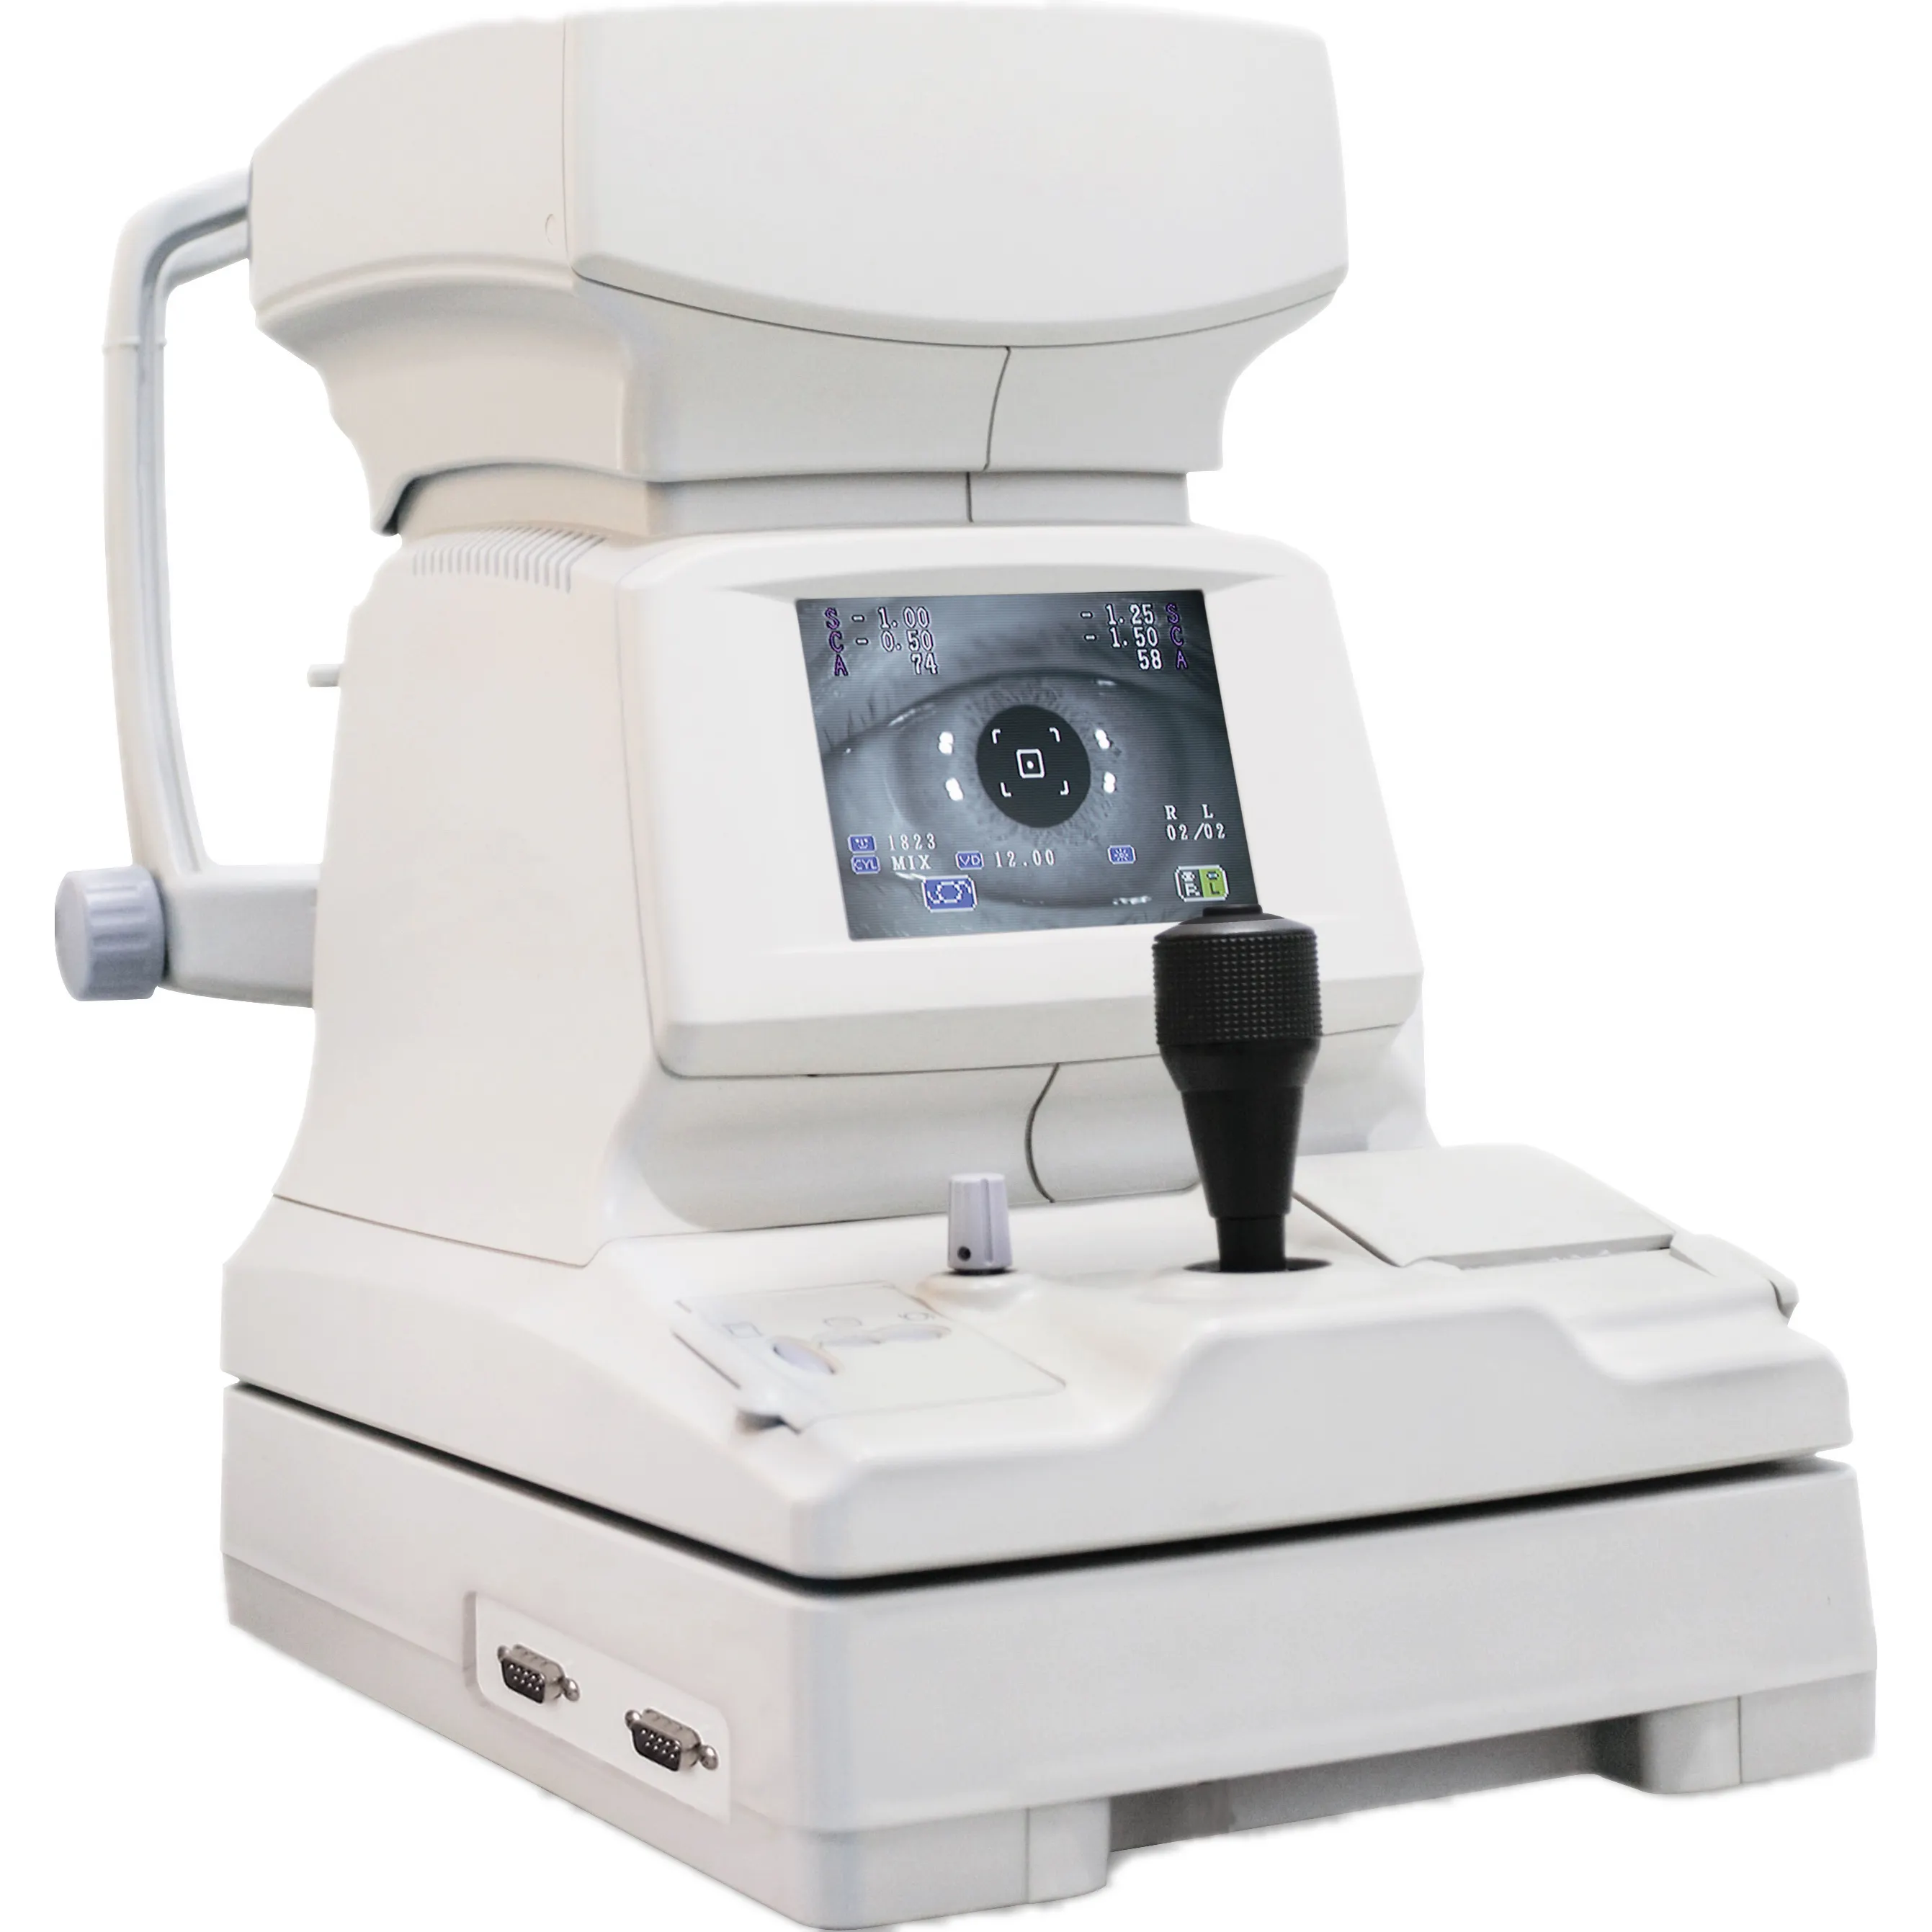 25% indirim tıbbi optometri ekipmanları oto refraktometre ile 5.7 inç TFT renkli LCD ekran CE ve Fcc onaylı satış